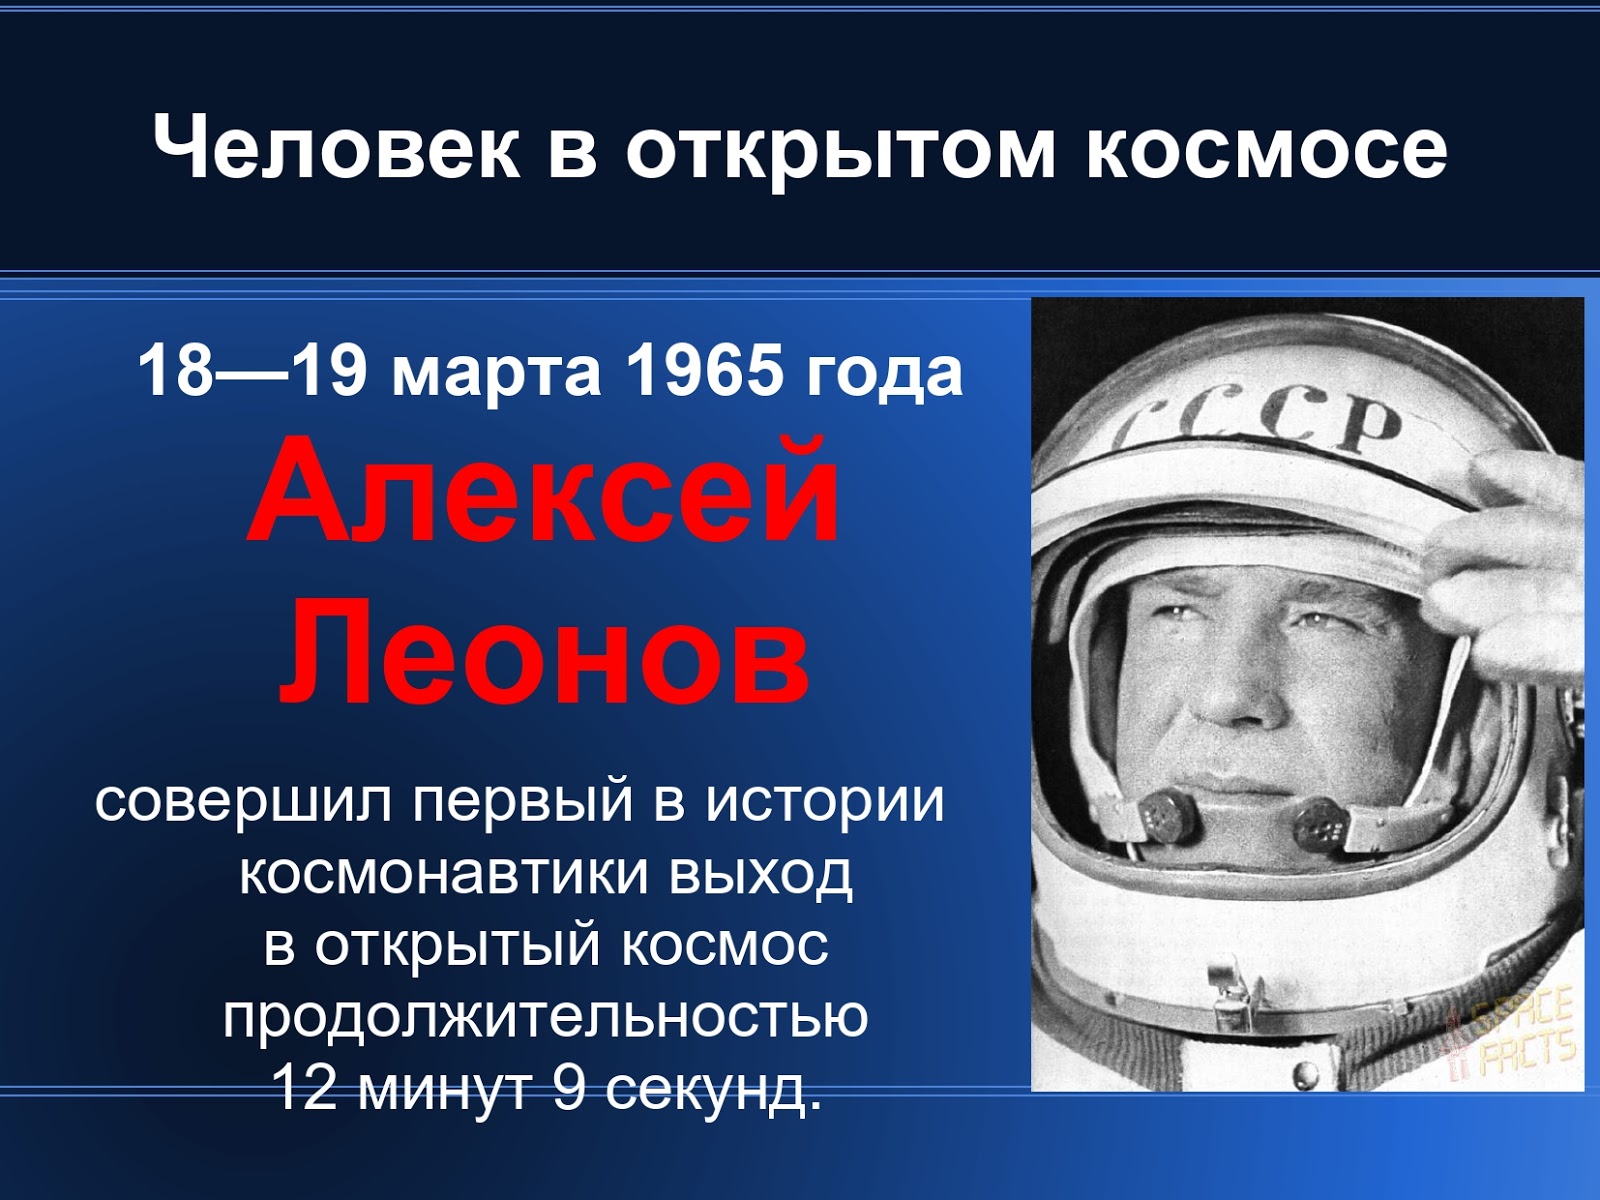 Почему важен праздник день космонавтики для россиян. День космонавтики презентация. Первые в космосе презентация.